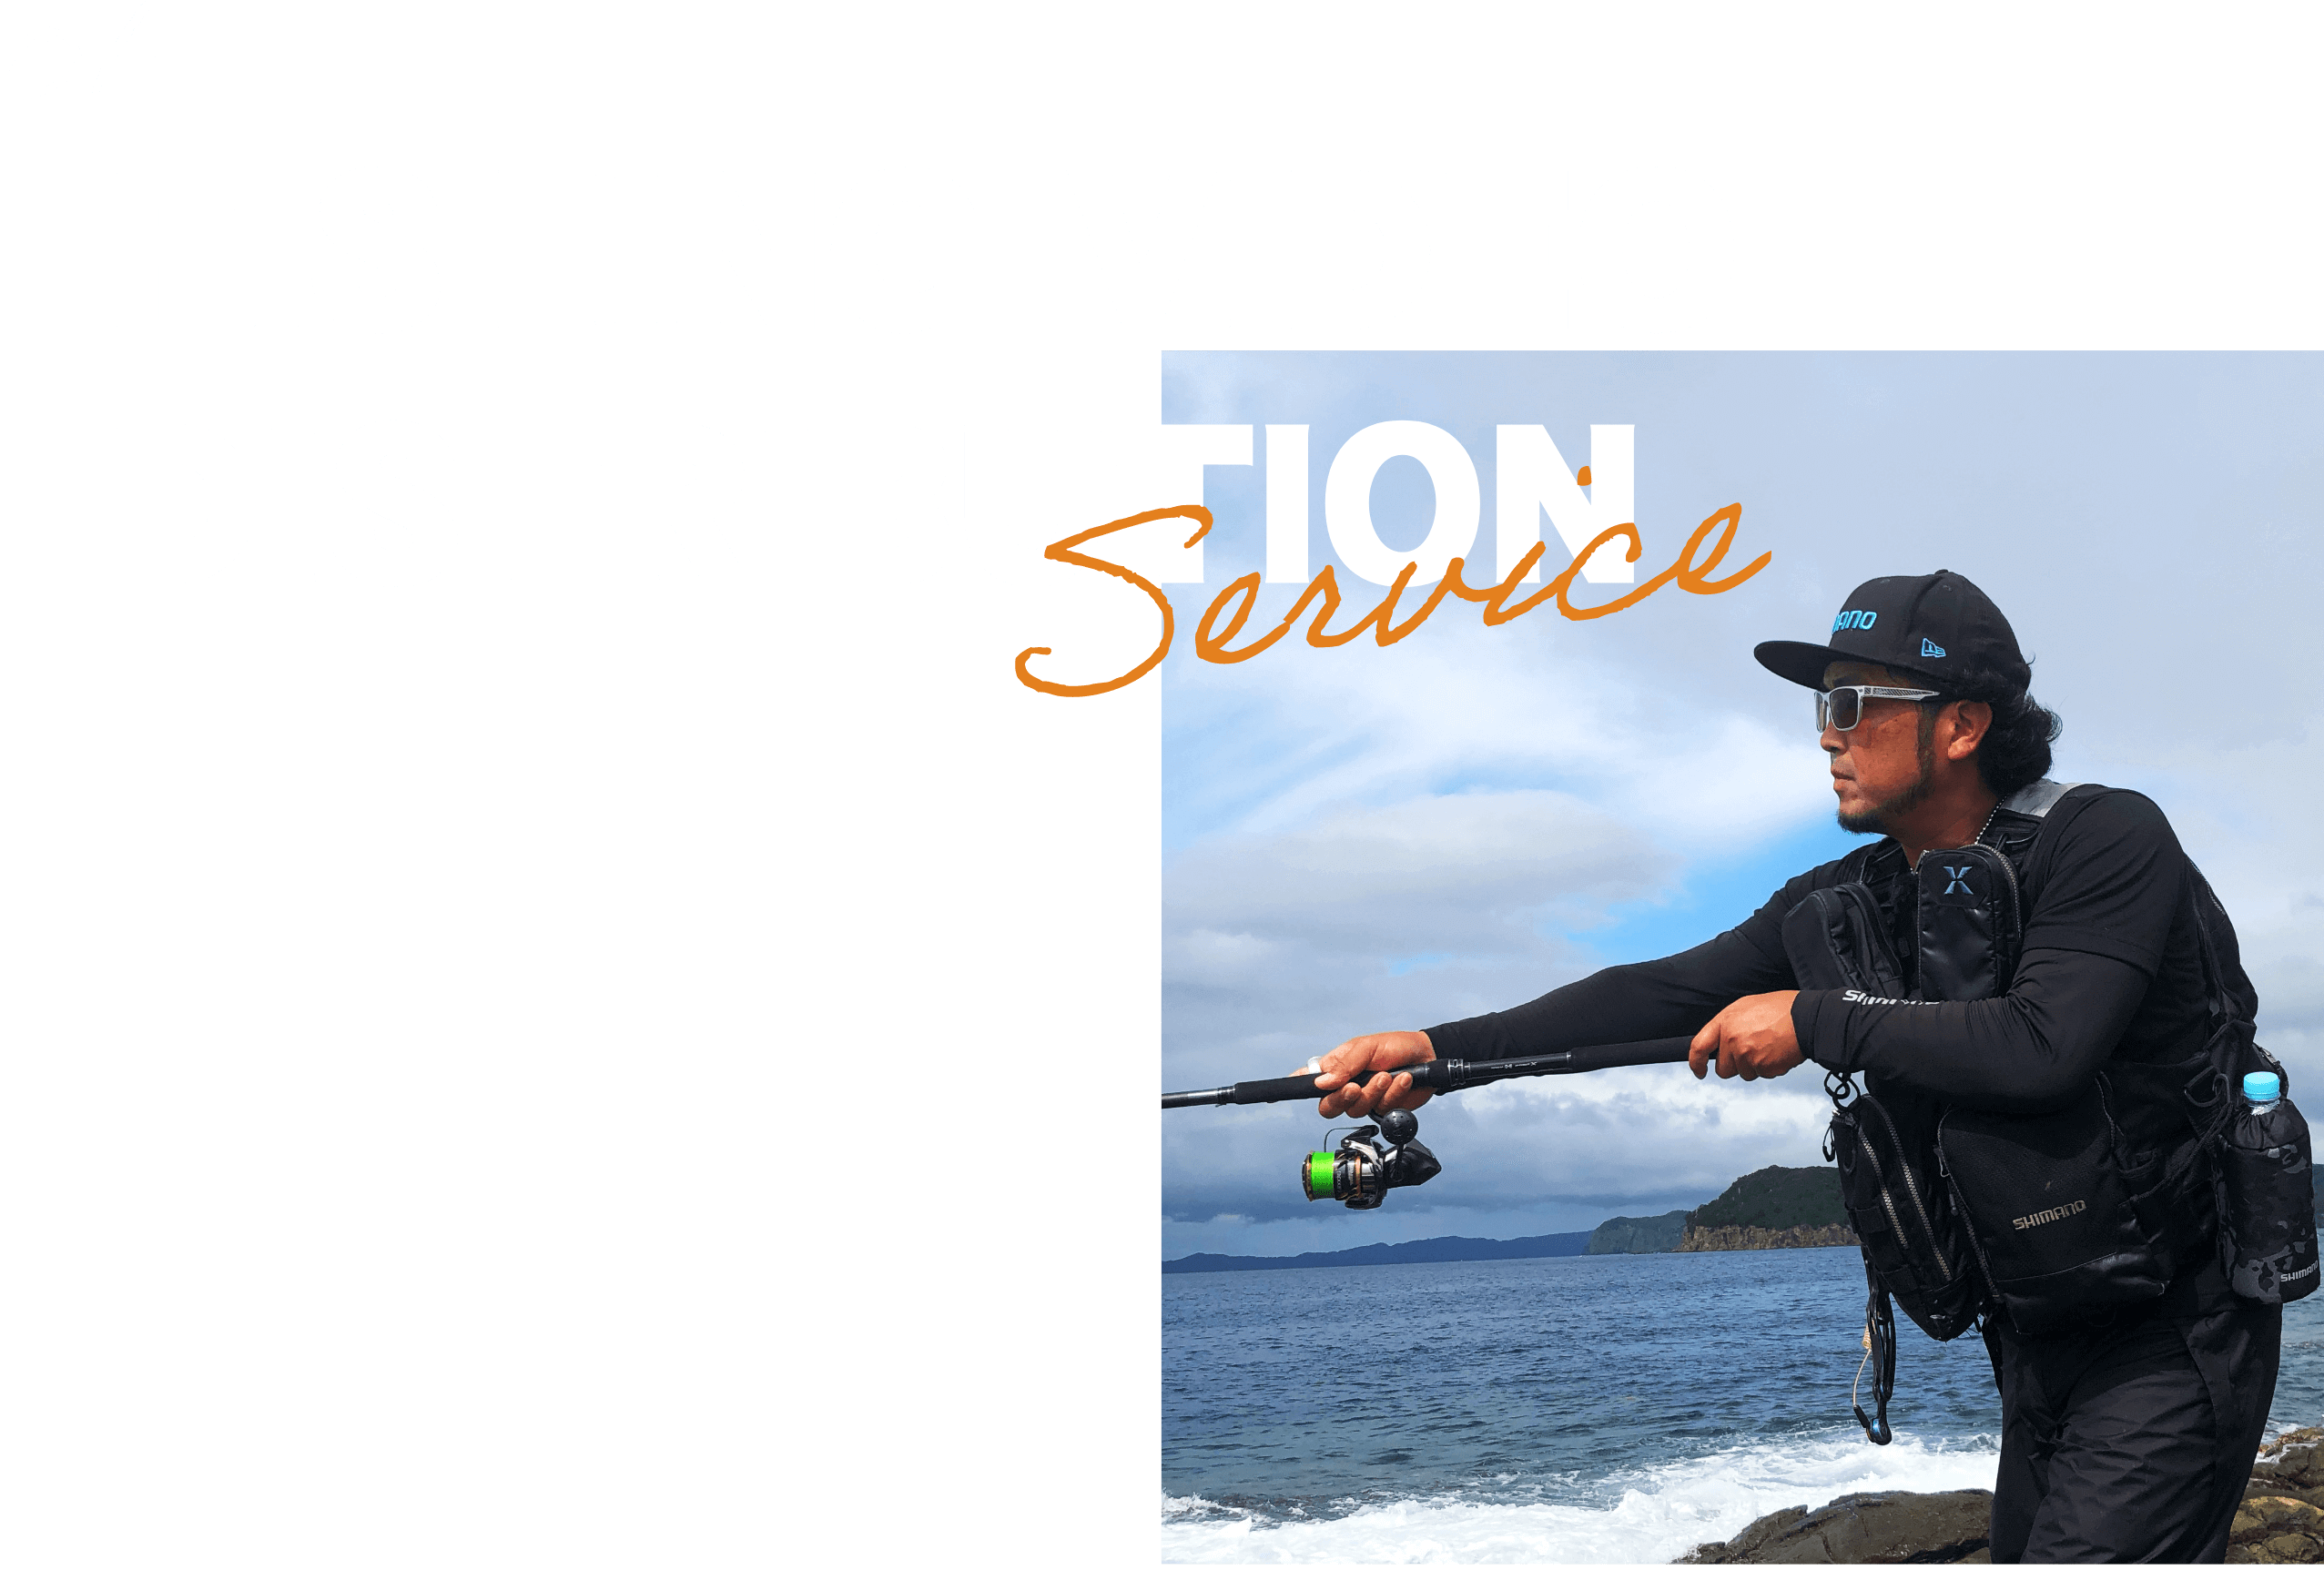 釣り専門放送局が 満を持してスタートした 釣り専門動画配信サービス